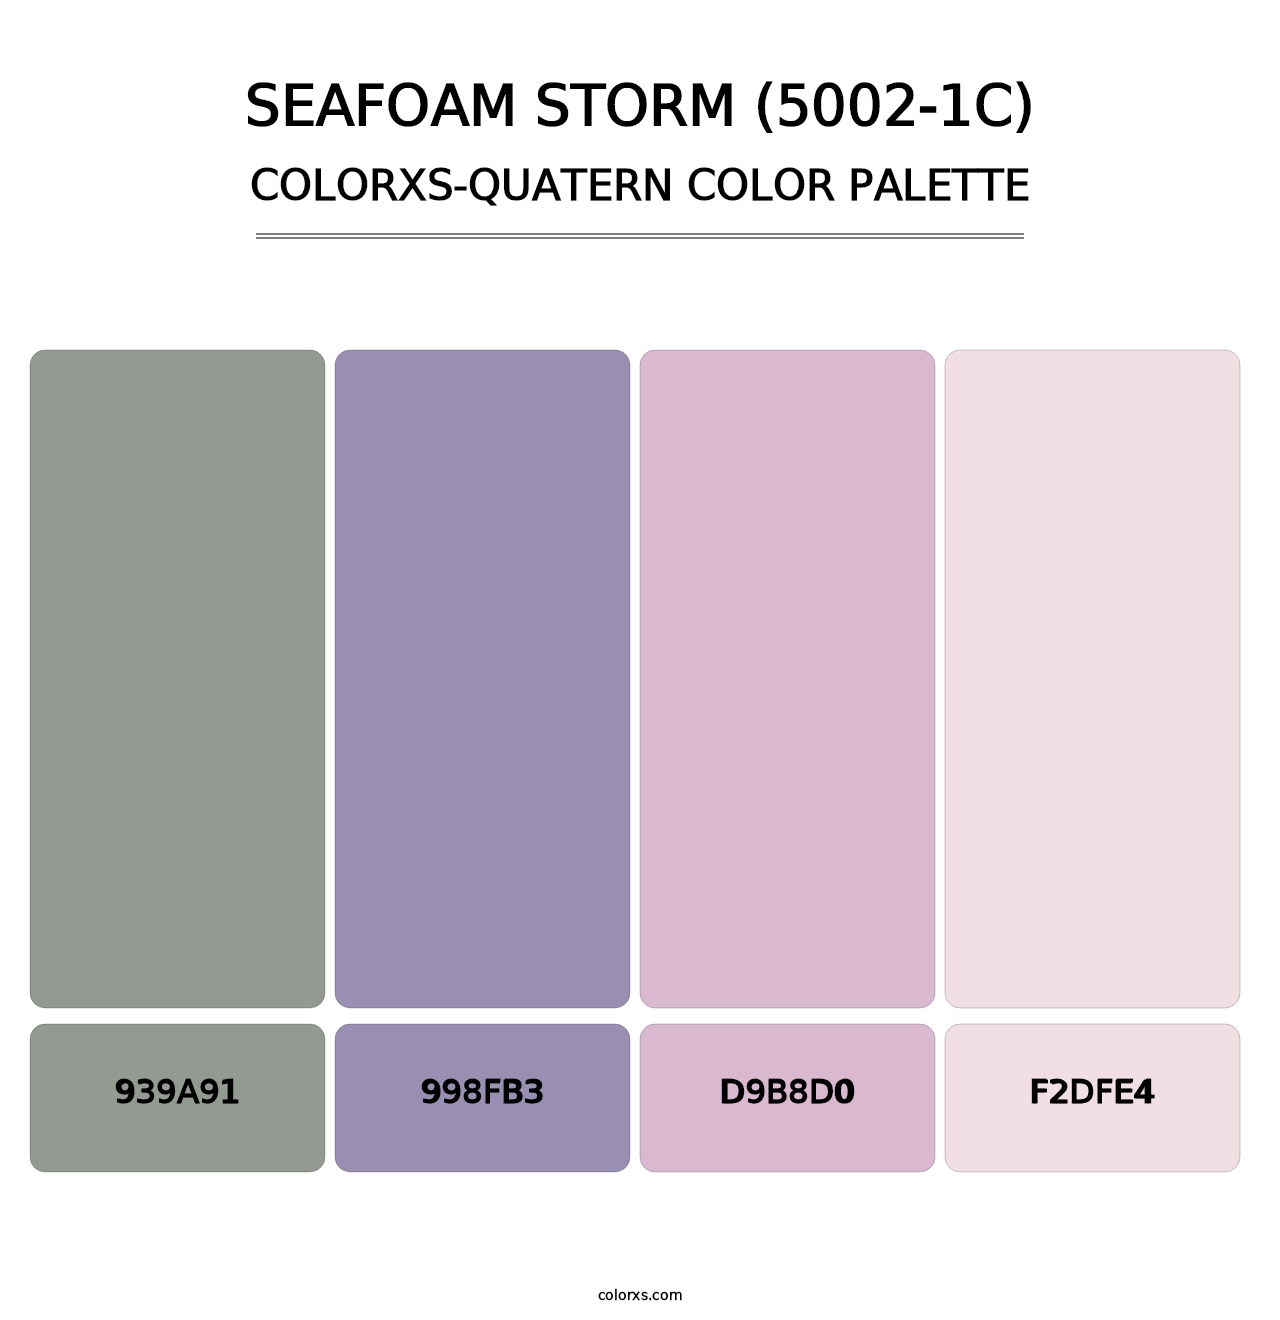 Seafoam Storm (5002-1C) - Colorxs Quatern Palette